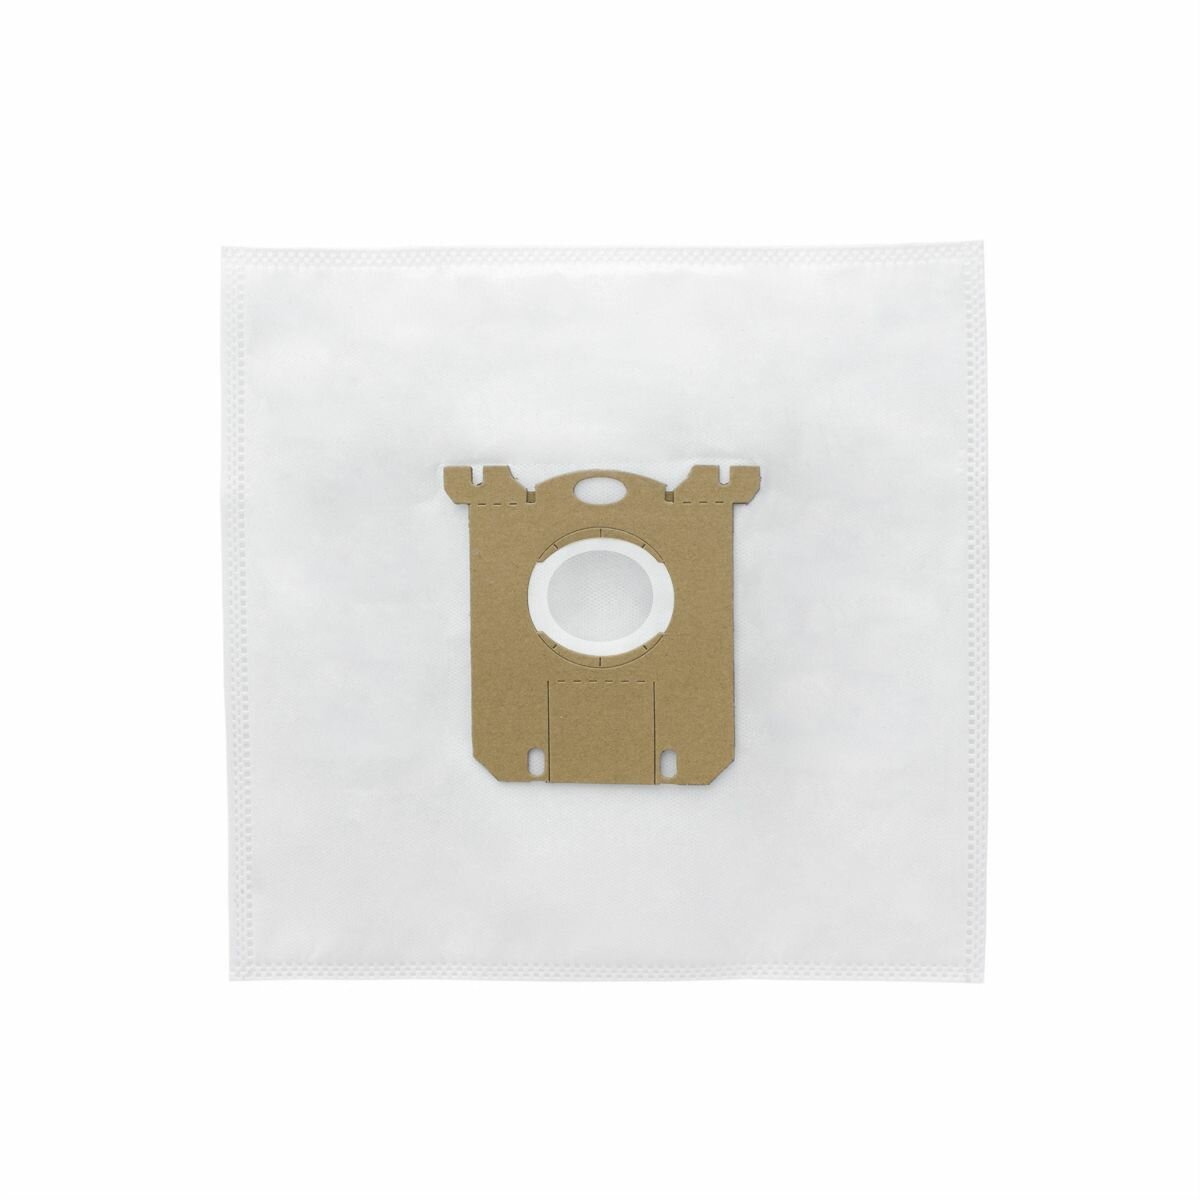 Мешки для пылесосов ELECTROLUX, тип: S-Bag, одноразовые синтетические пылесборники RootSystem EL2(6), комплект 5 шт. + фильтр